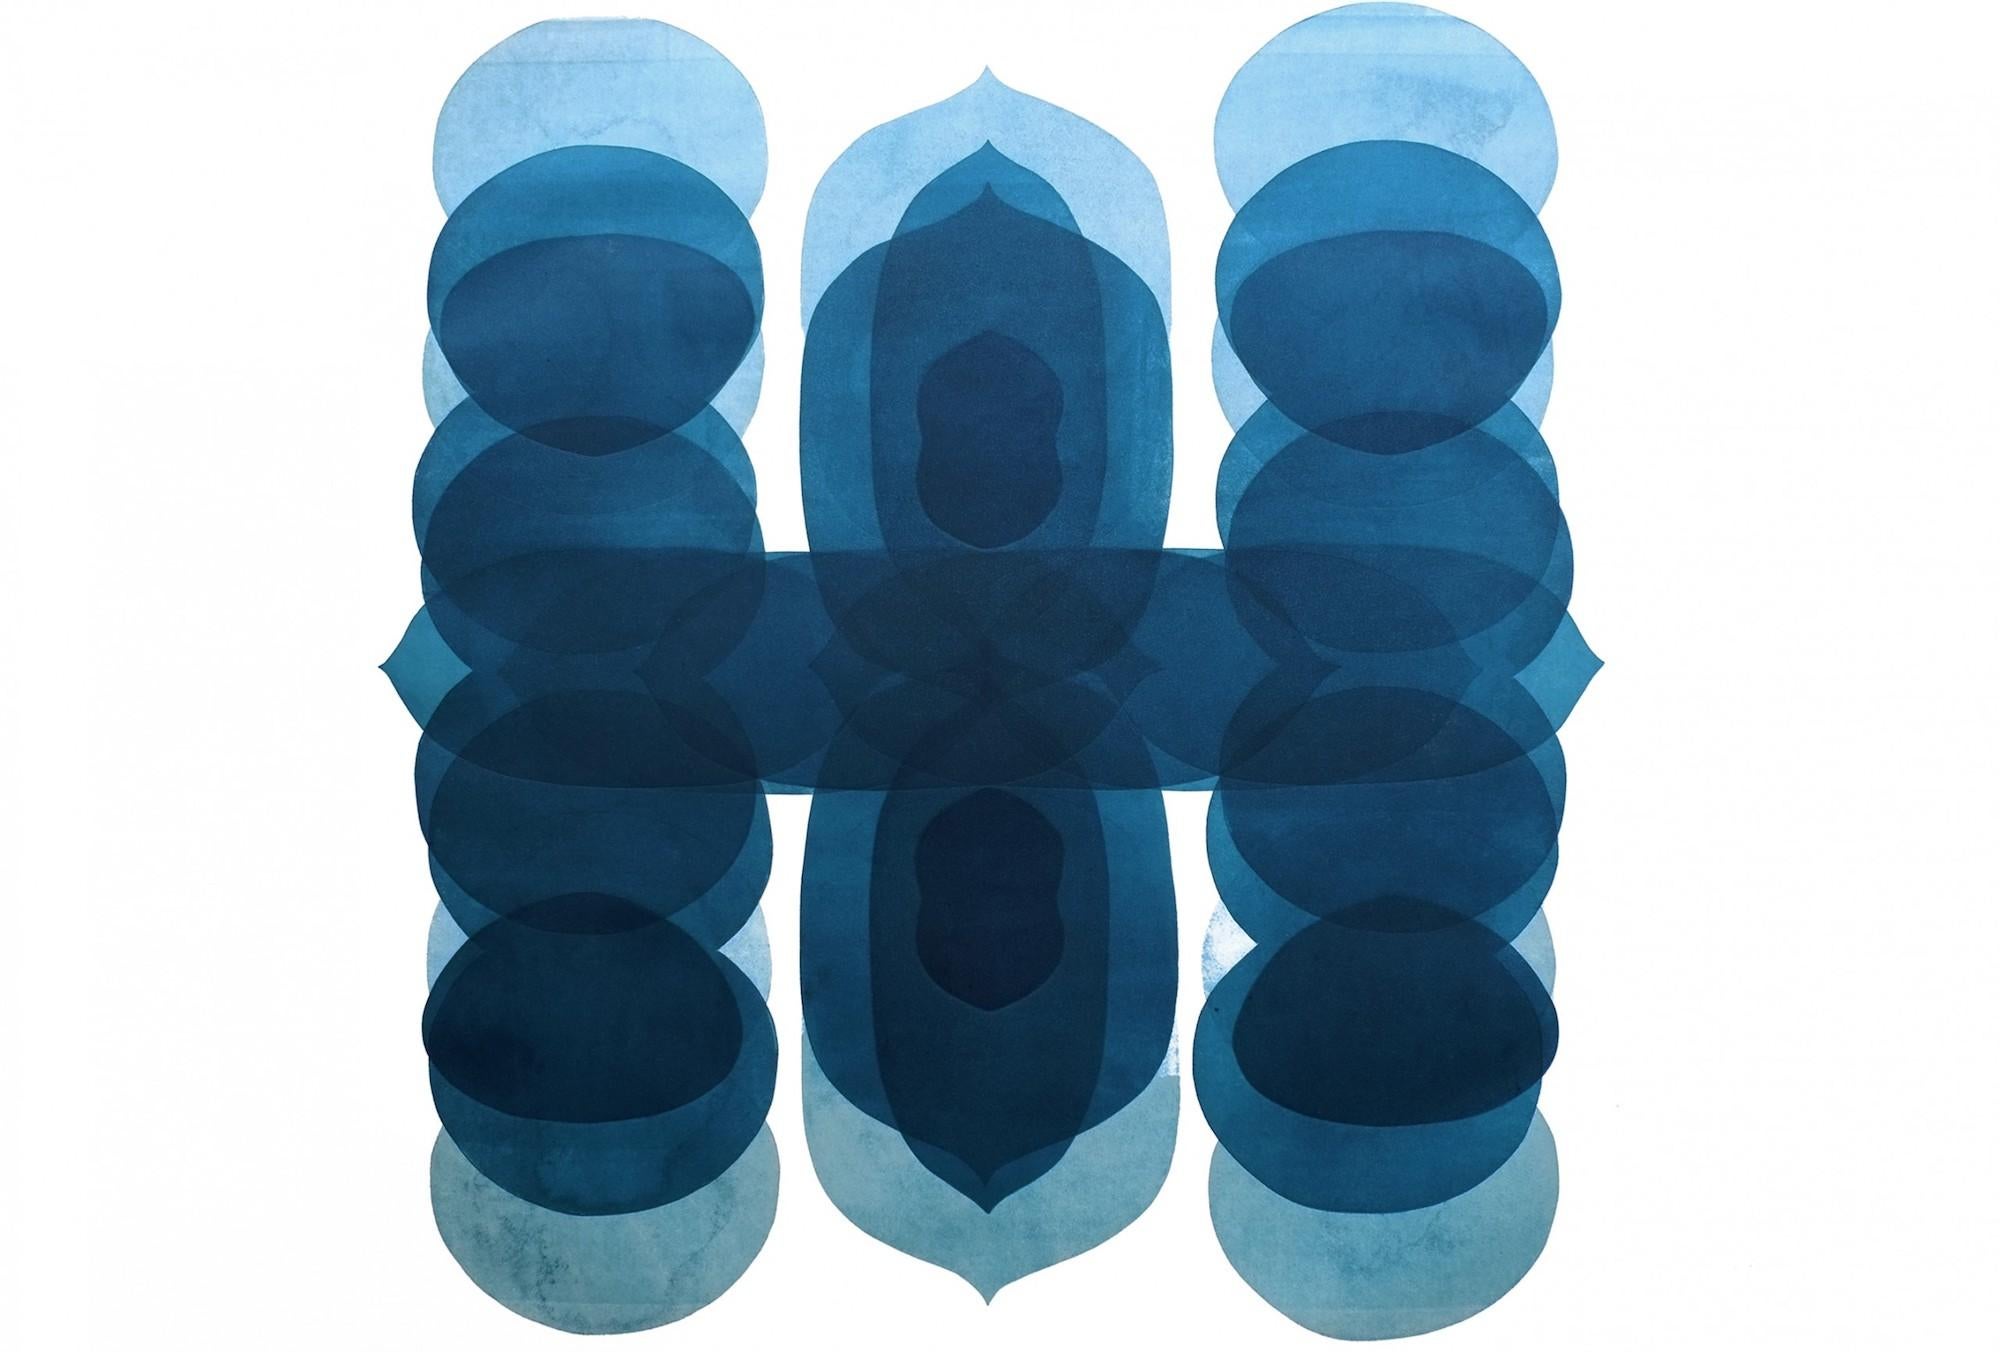 Abstract Painting Jonathan Moss - NV5, Impression abstraite minimaliste, œuvre d'art contemporaine unique en bleu et blanc